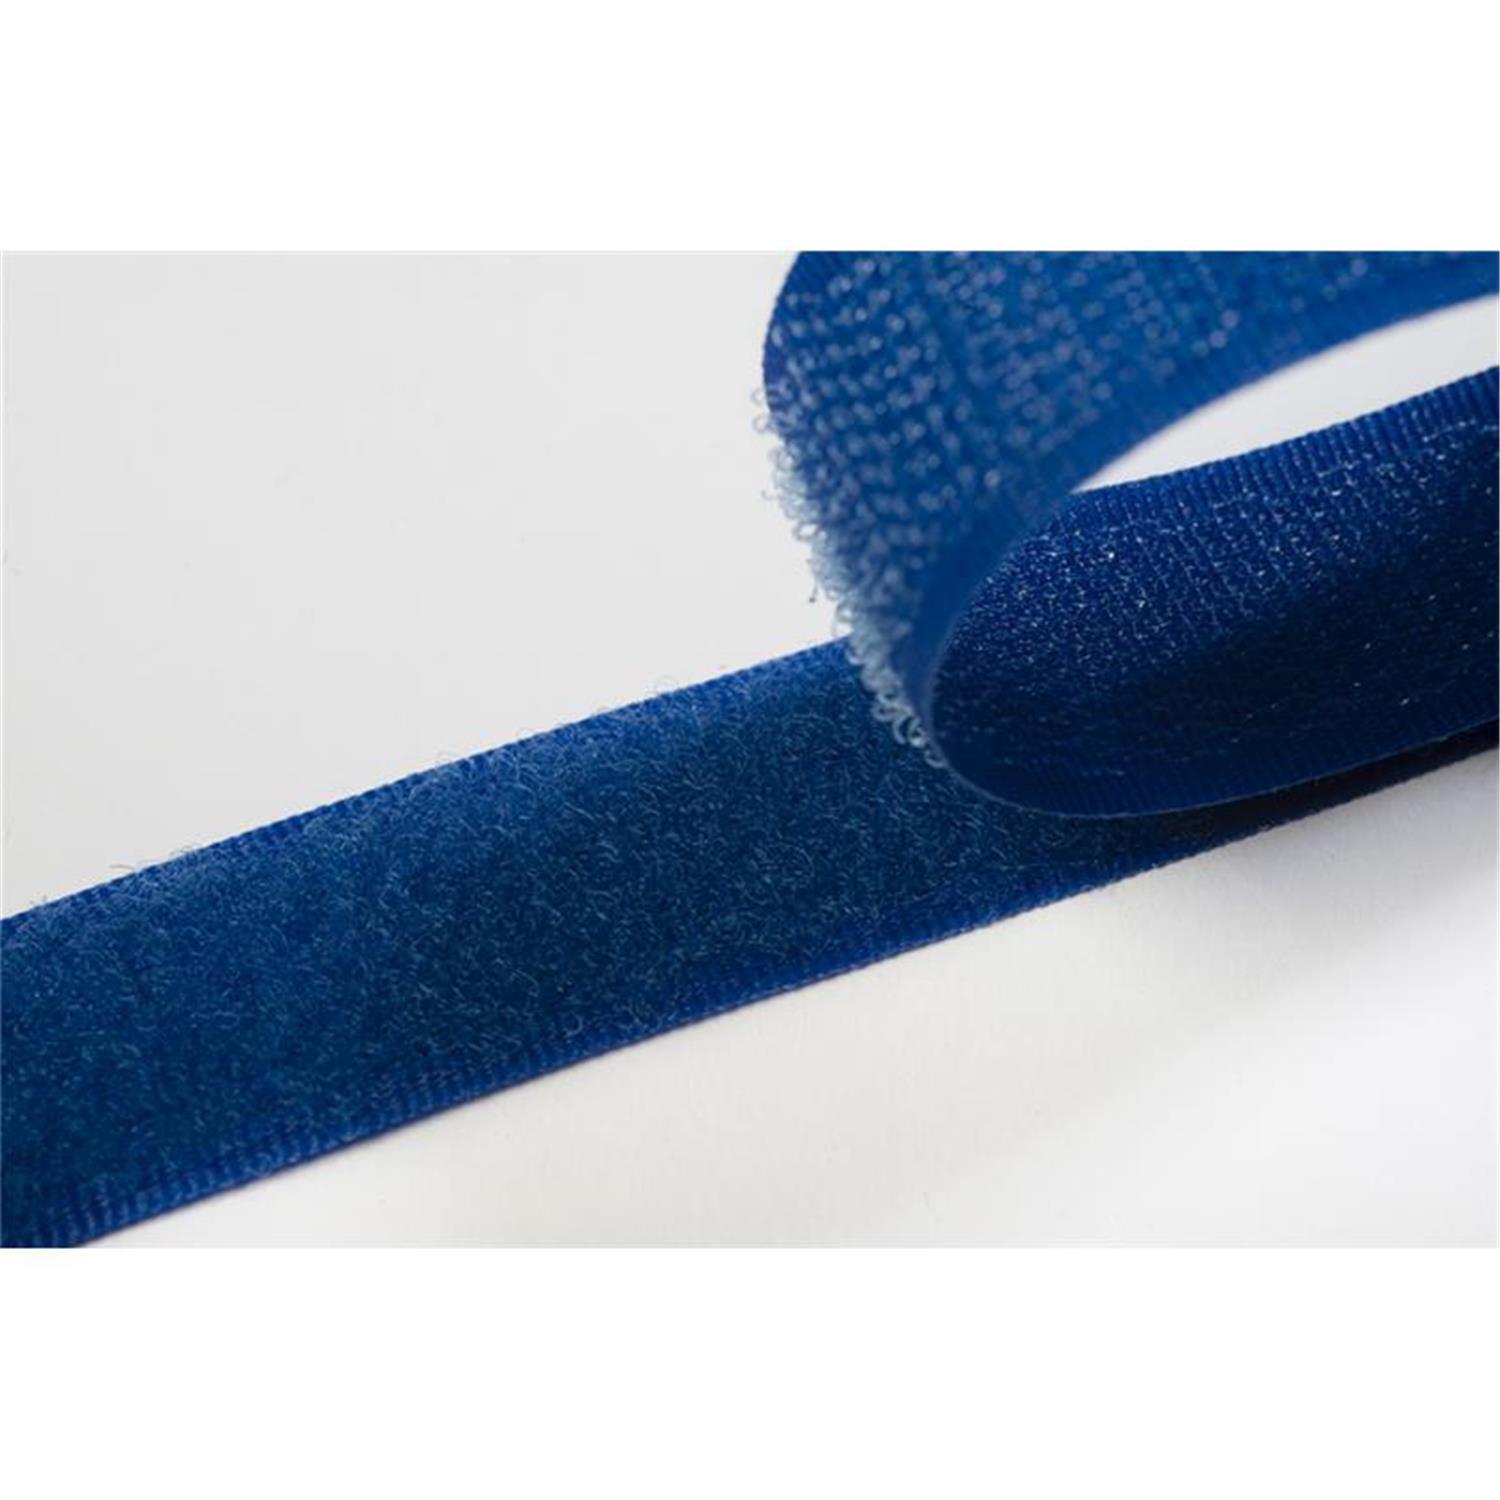 Klettband zum aufnähen, 50 mm, royalblau #06 4 Meter